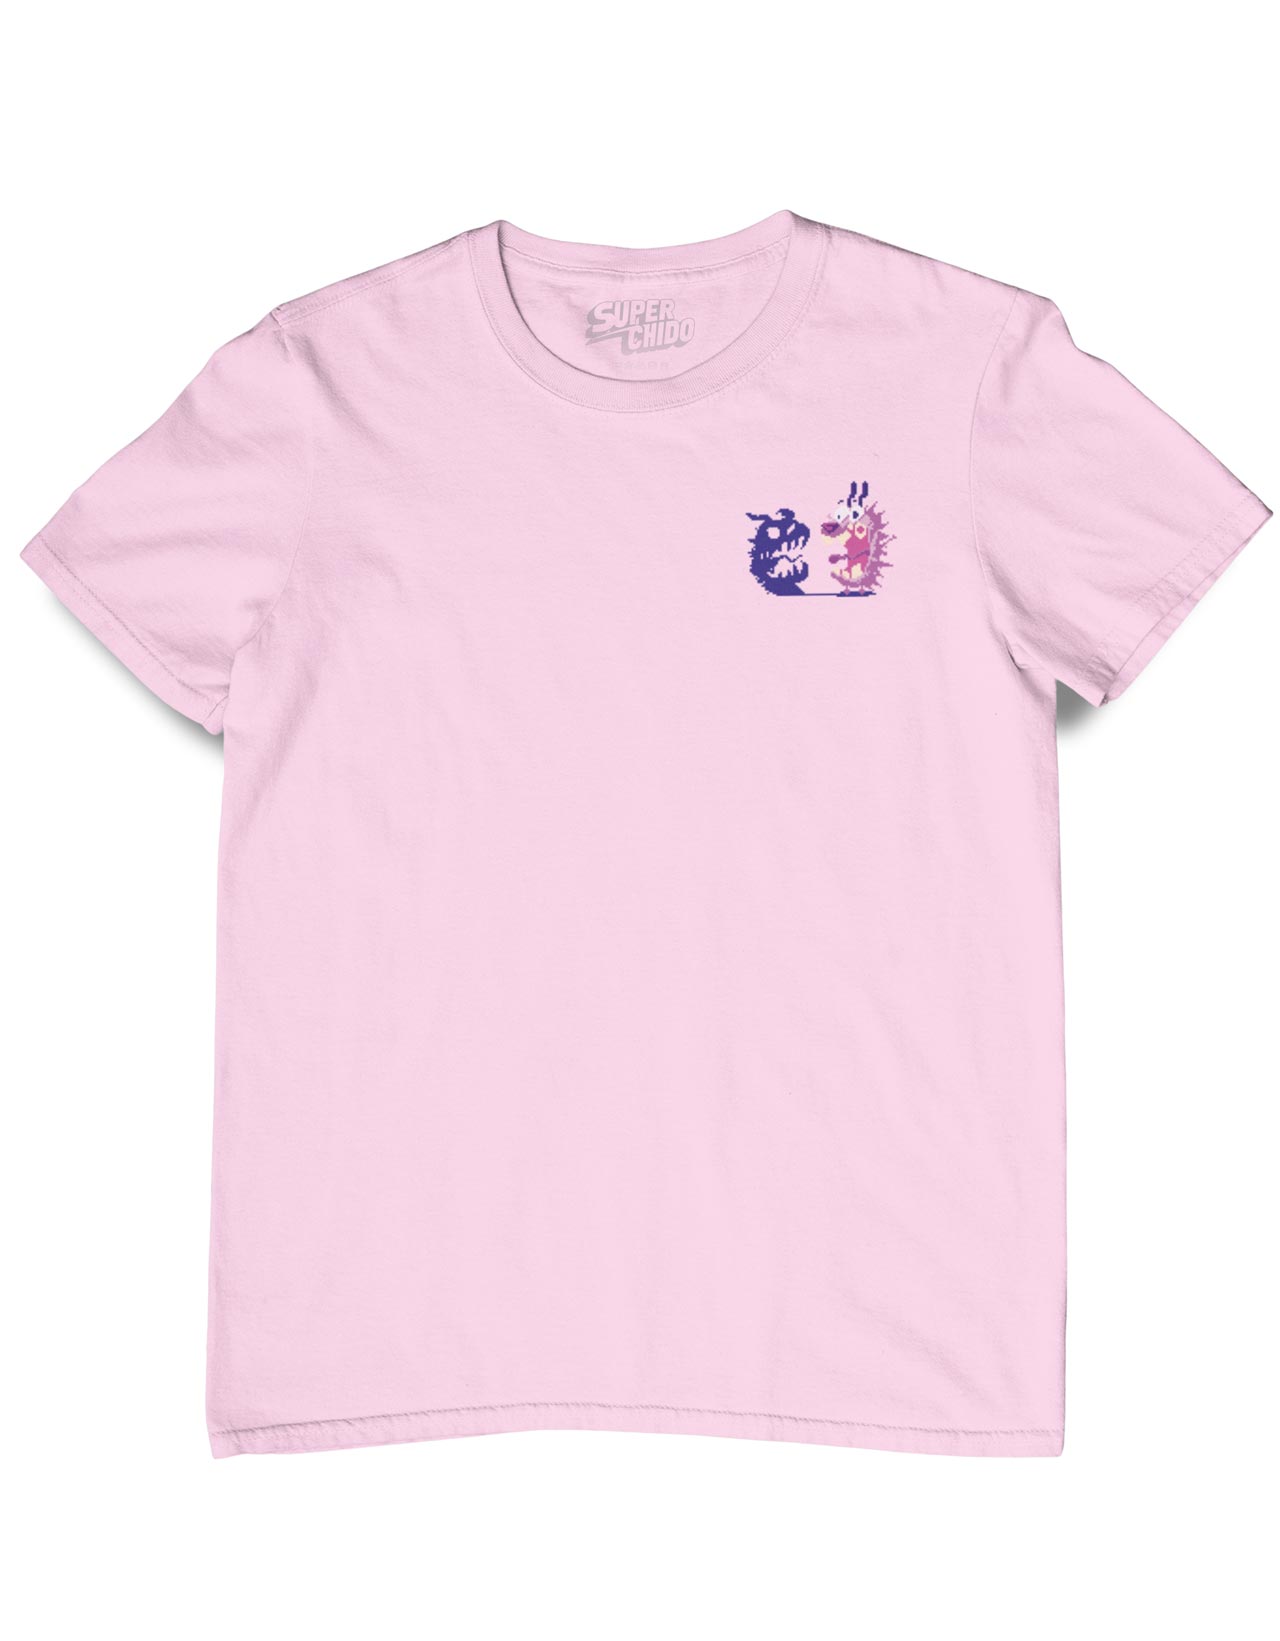  GUESS Camisetas y Polo Originales Mujer Rosa - M - Camiseta de  manga corta, Rosado : Ropa, Zapatos y Joyería